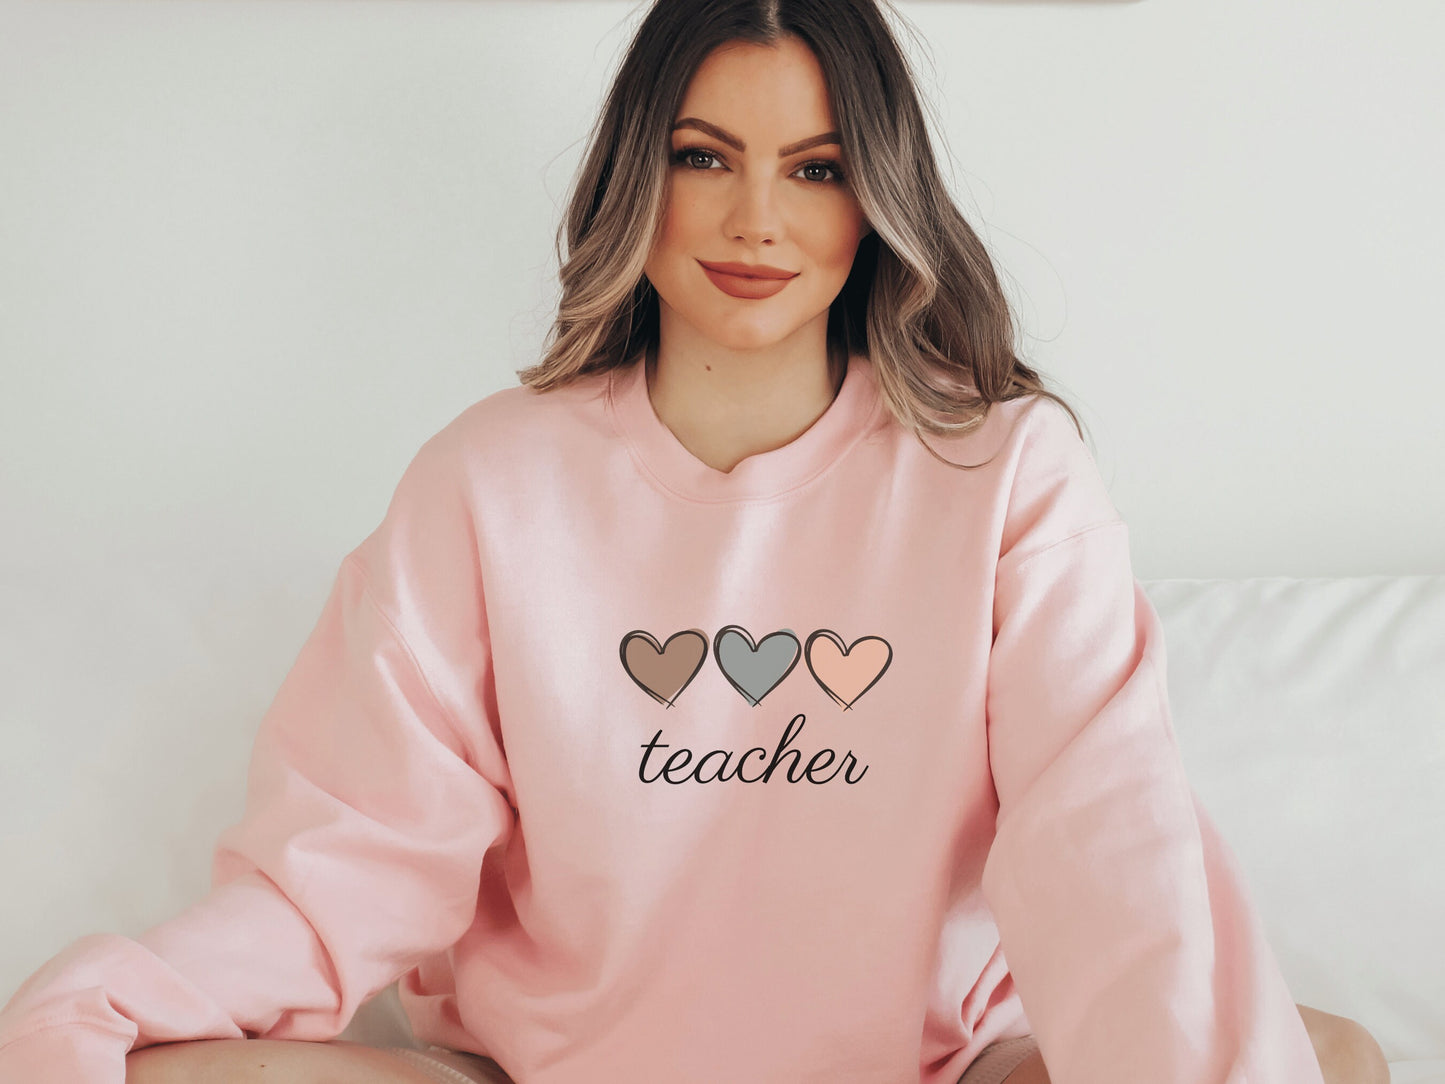 Teacher Sweatshirt, Gift for Teach, Cute Teaching Sweatshirt, Teaching Shirt, Boho Teacher Sweater